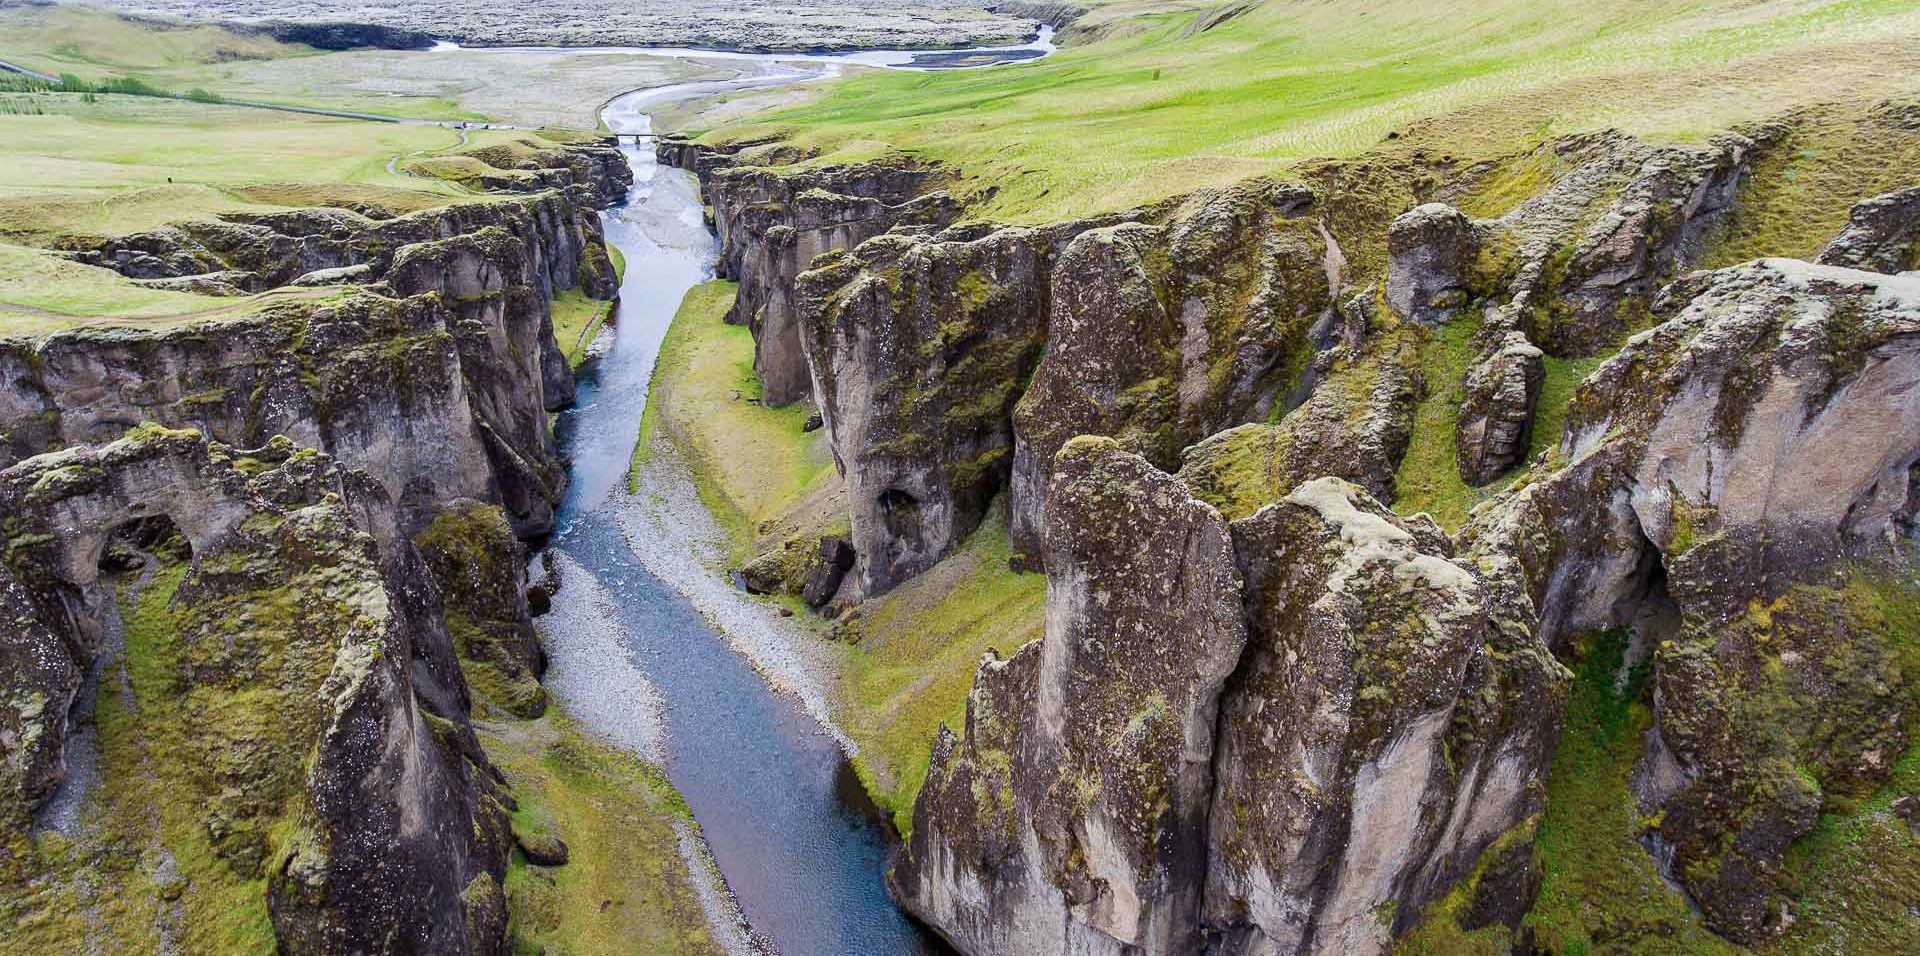 Πάσχα στην Ισλανδία ή το Νεπάλ; Οι ιδανικές επιλογές για μια διαφορετική φετινή απόδραση!